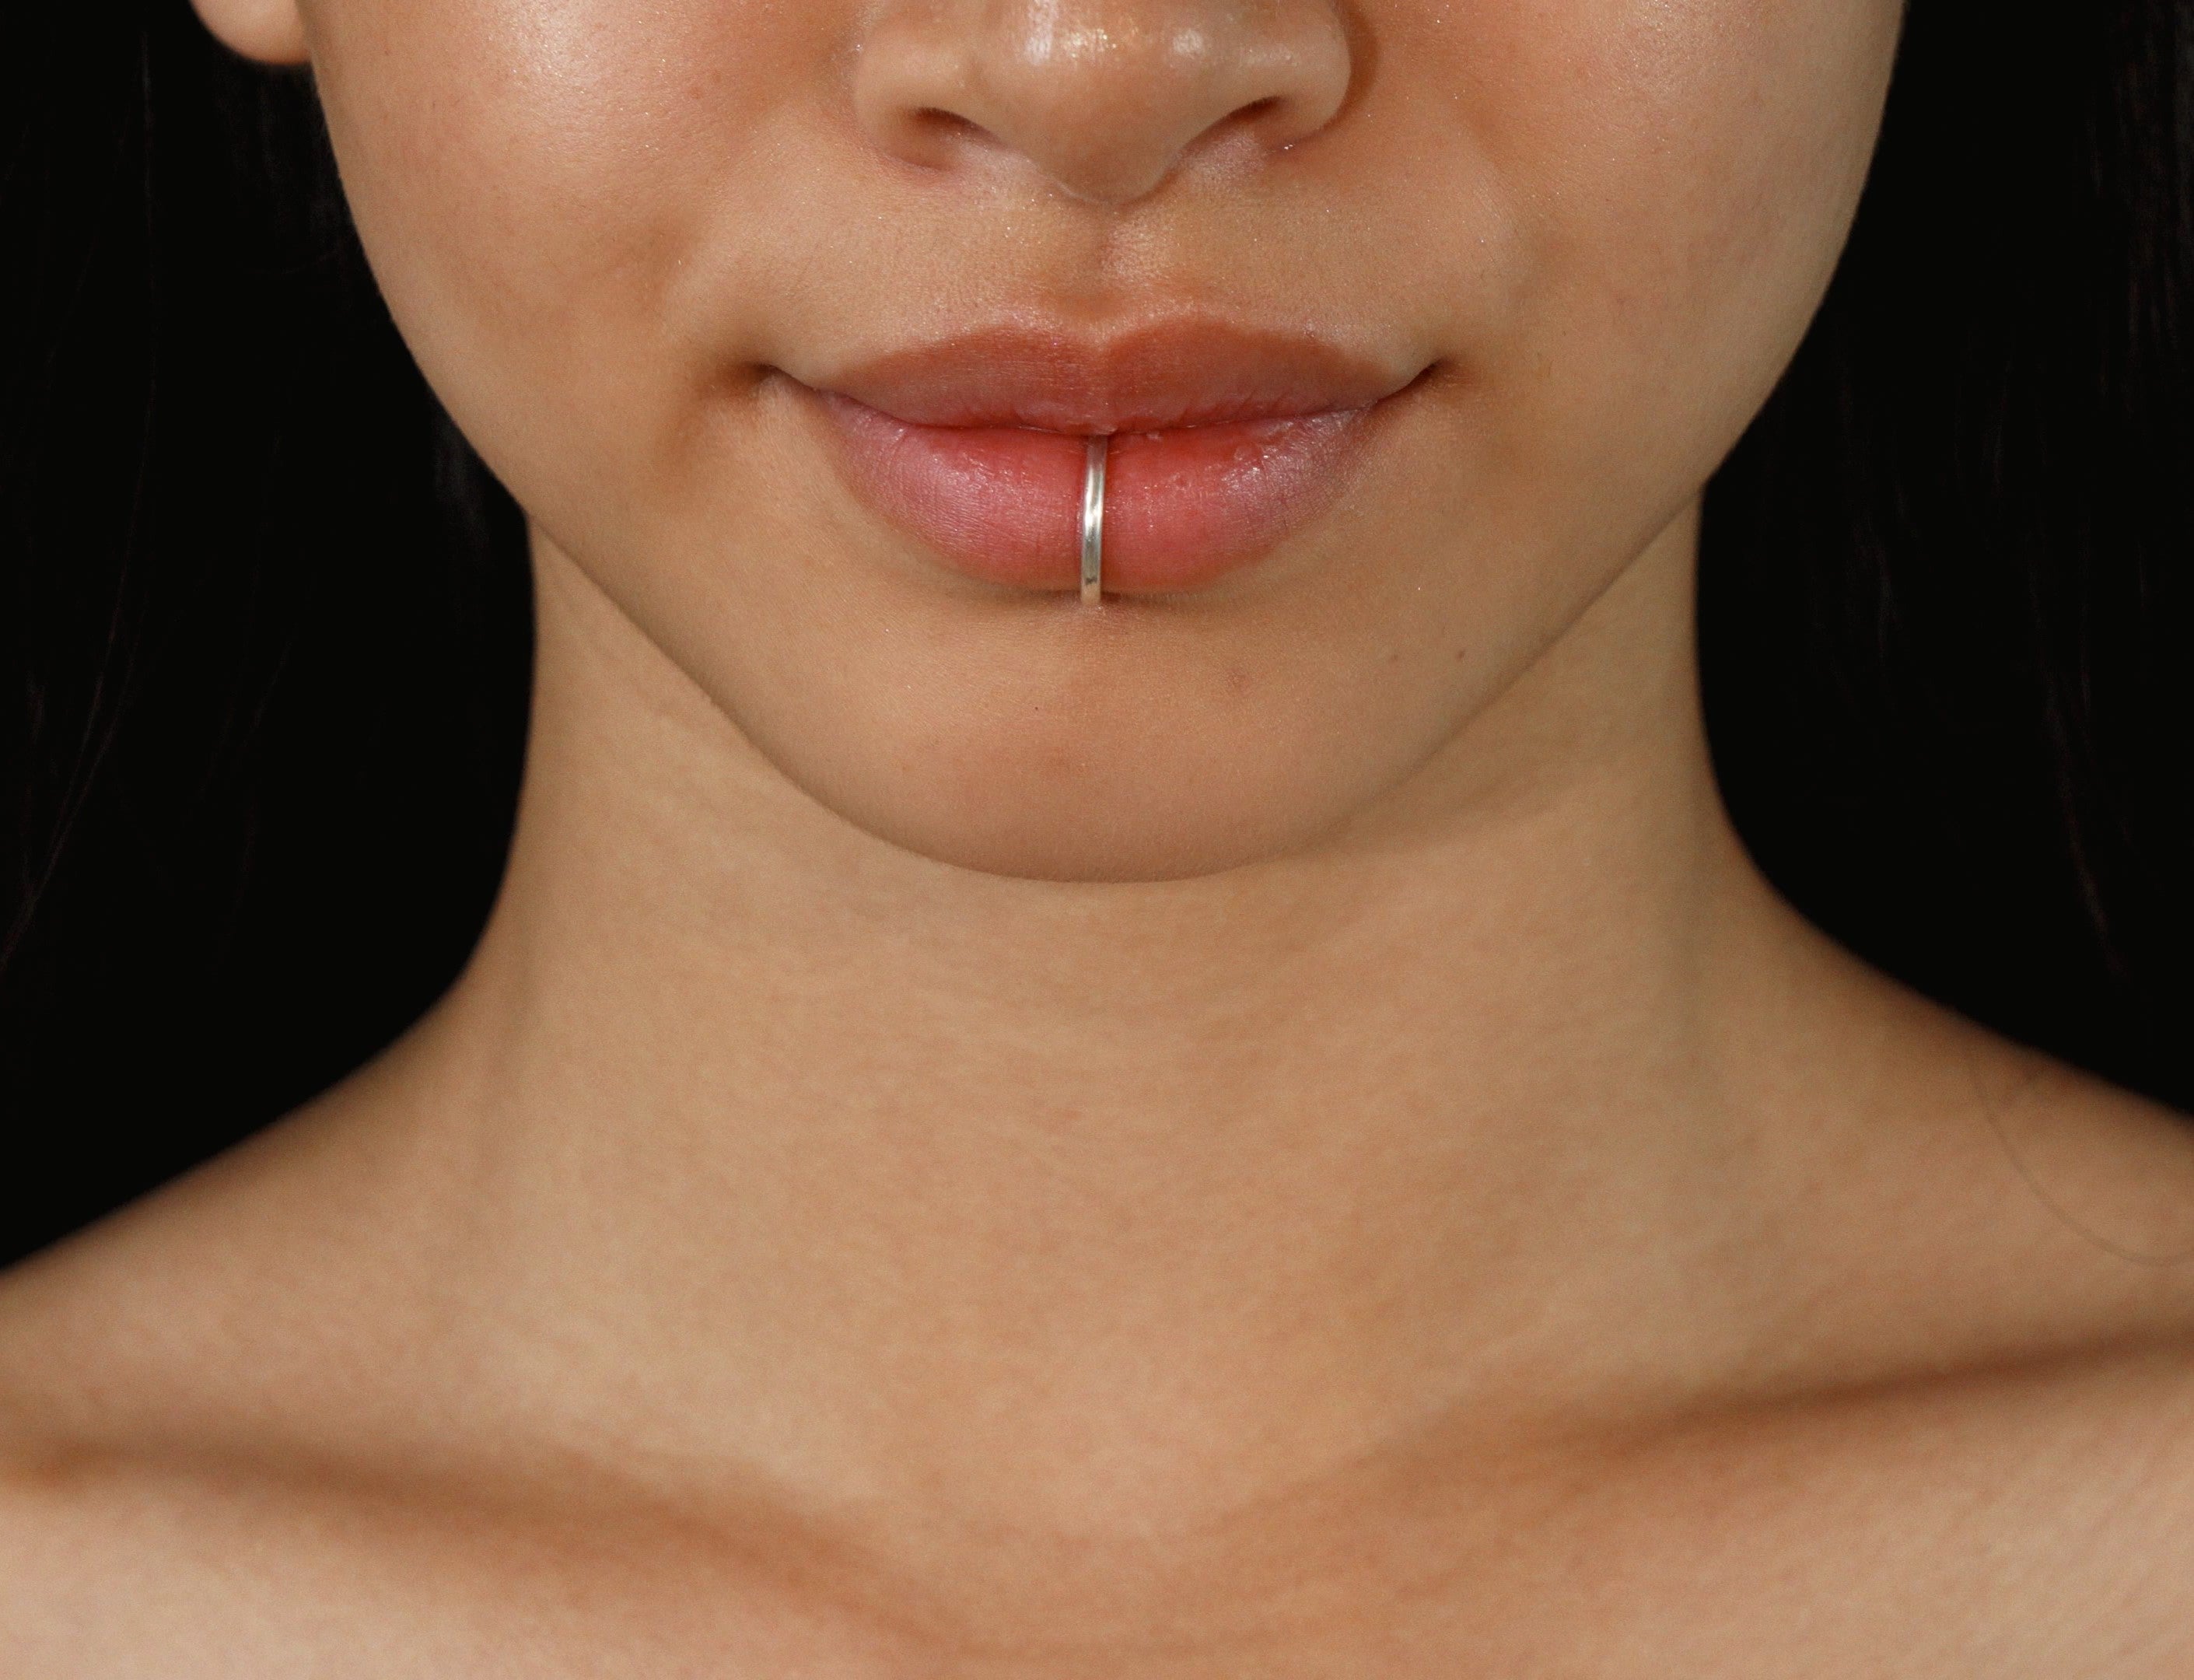 Bijoux de piercing pour les lèvres